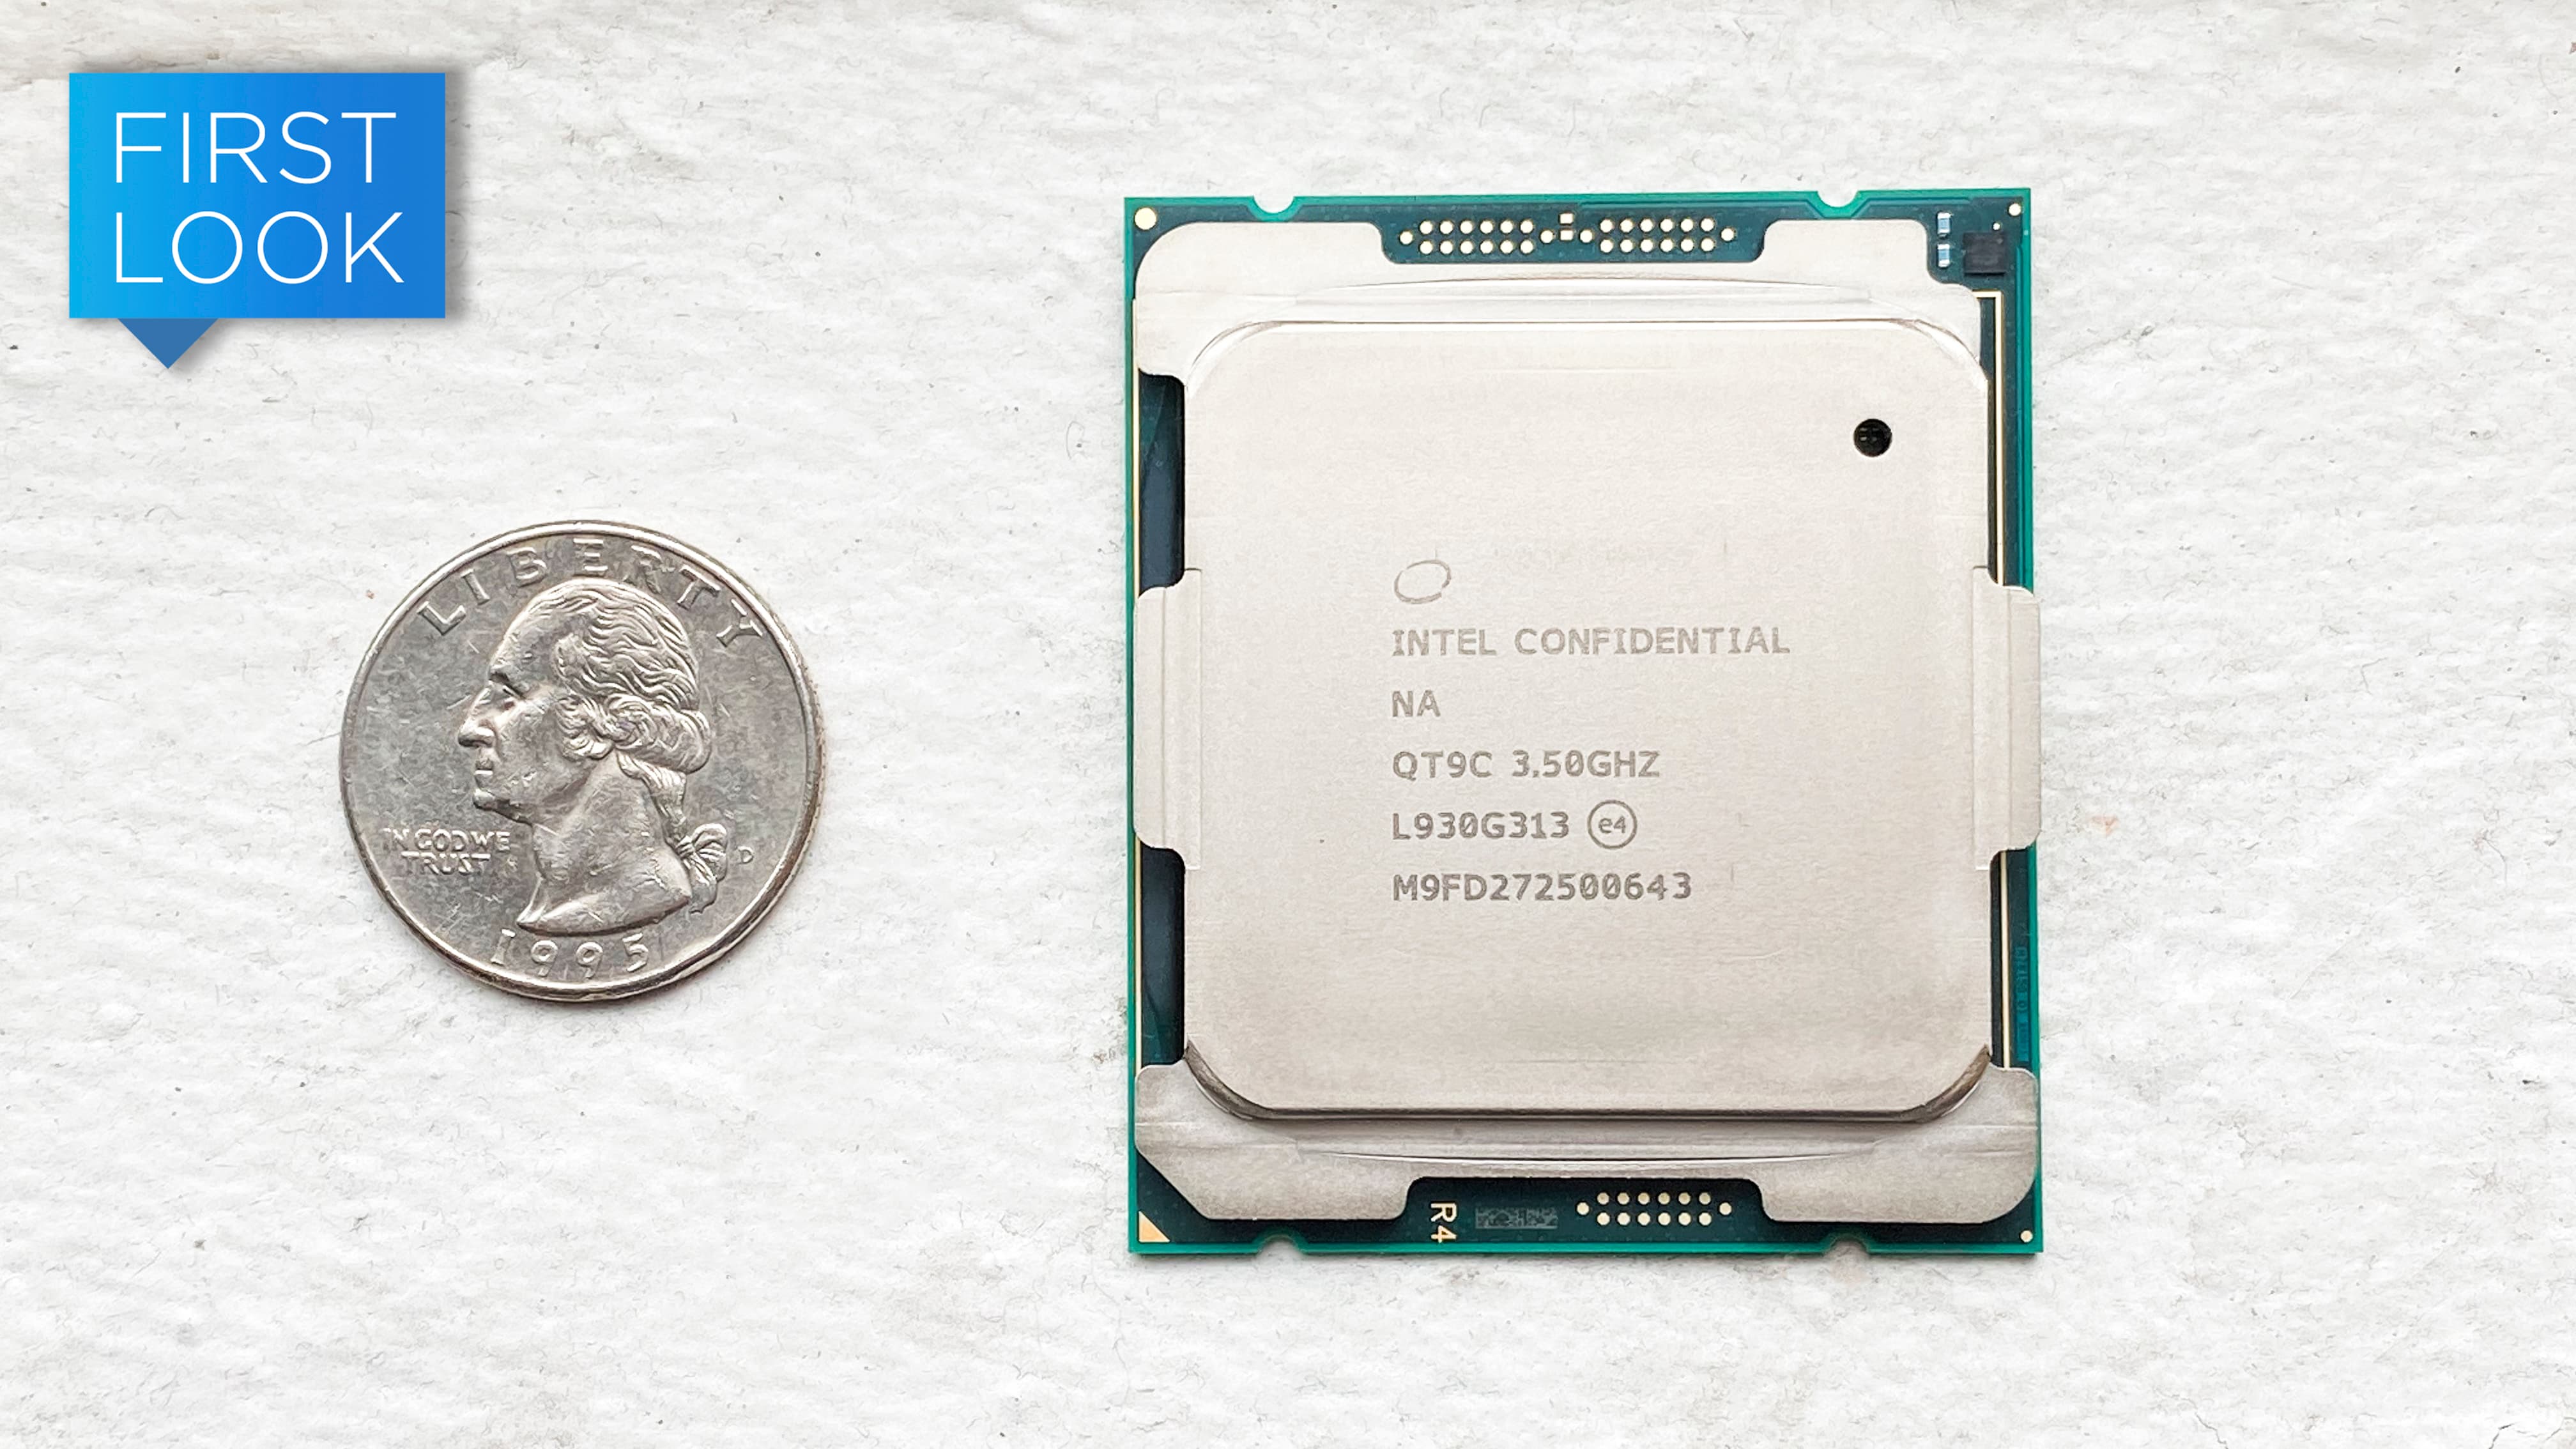 Novo processador Xeon da Intel comparado com uma moeda